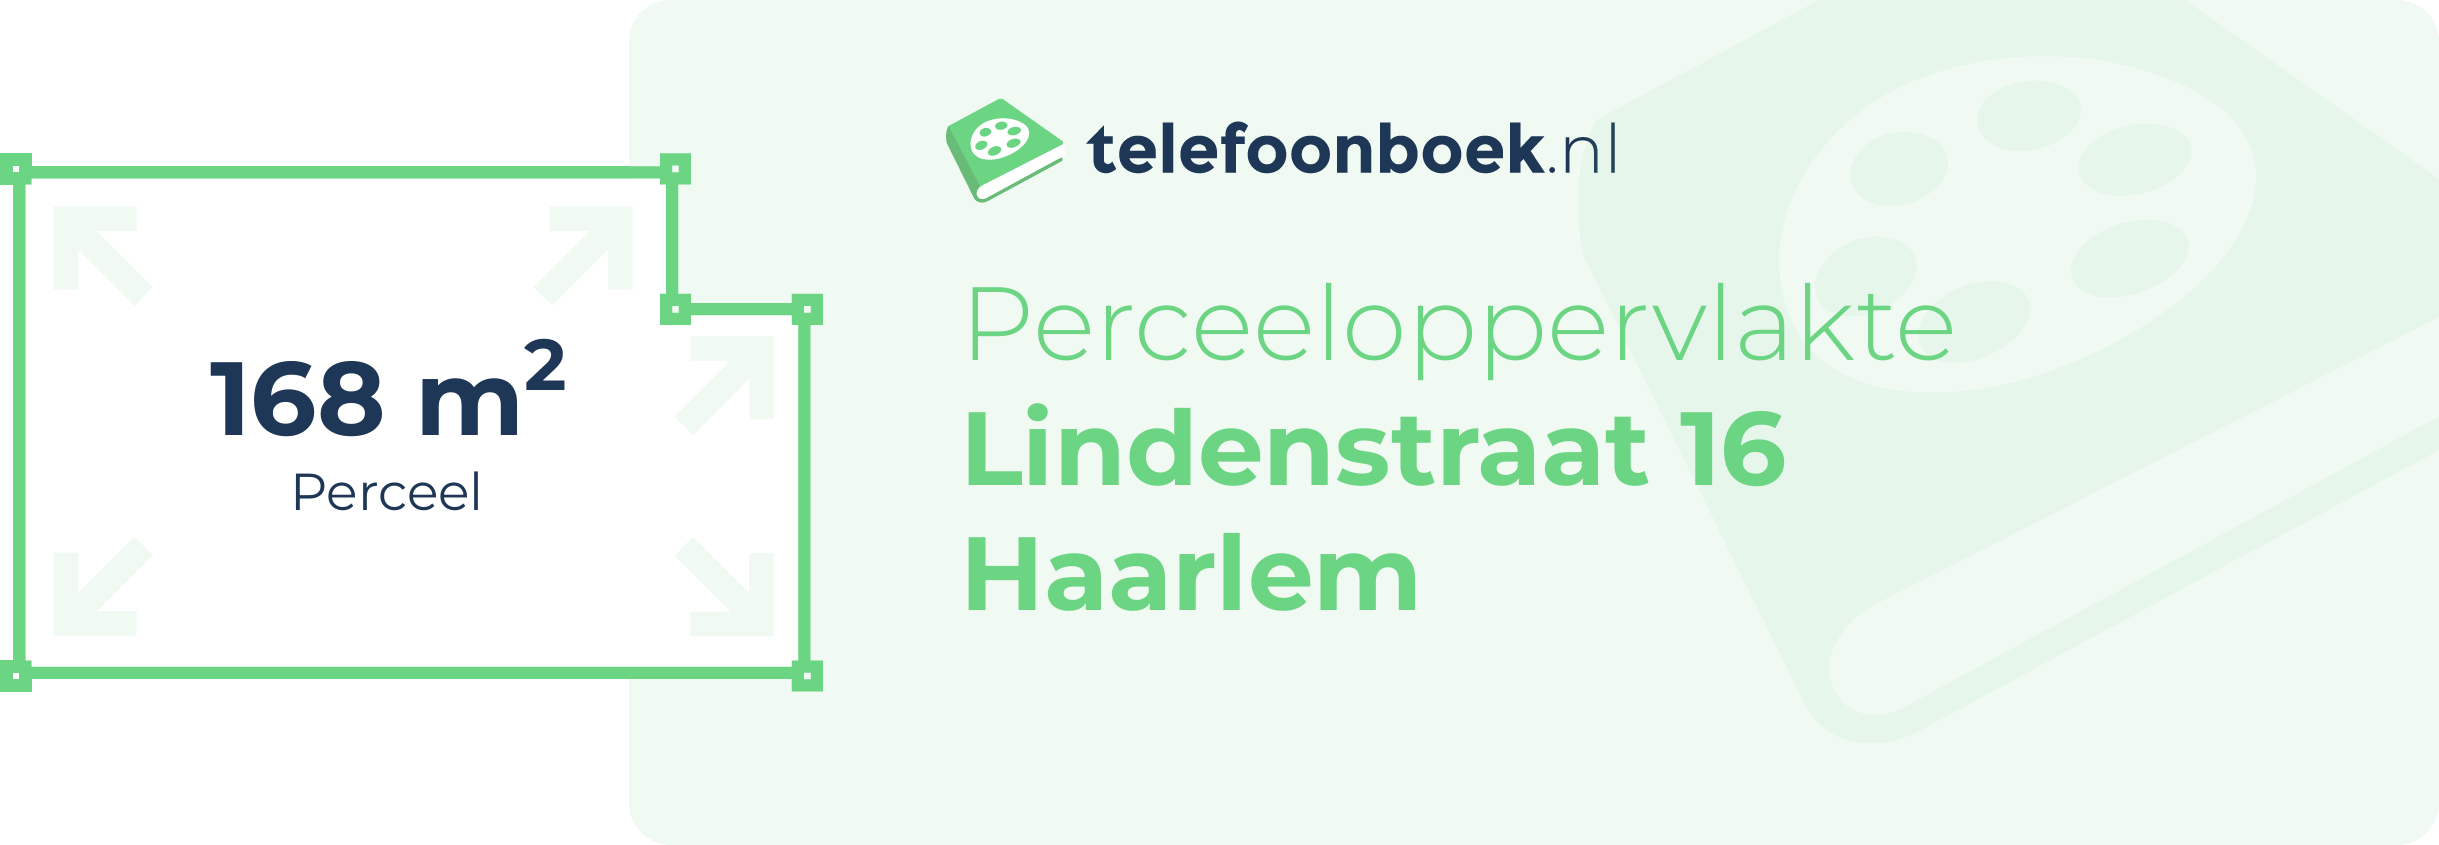 Perceeloppervlakte Lindenstraat 16 Haarlem